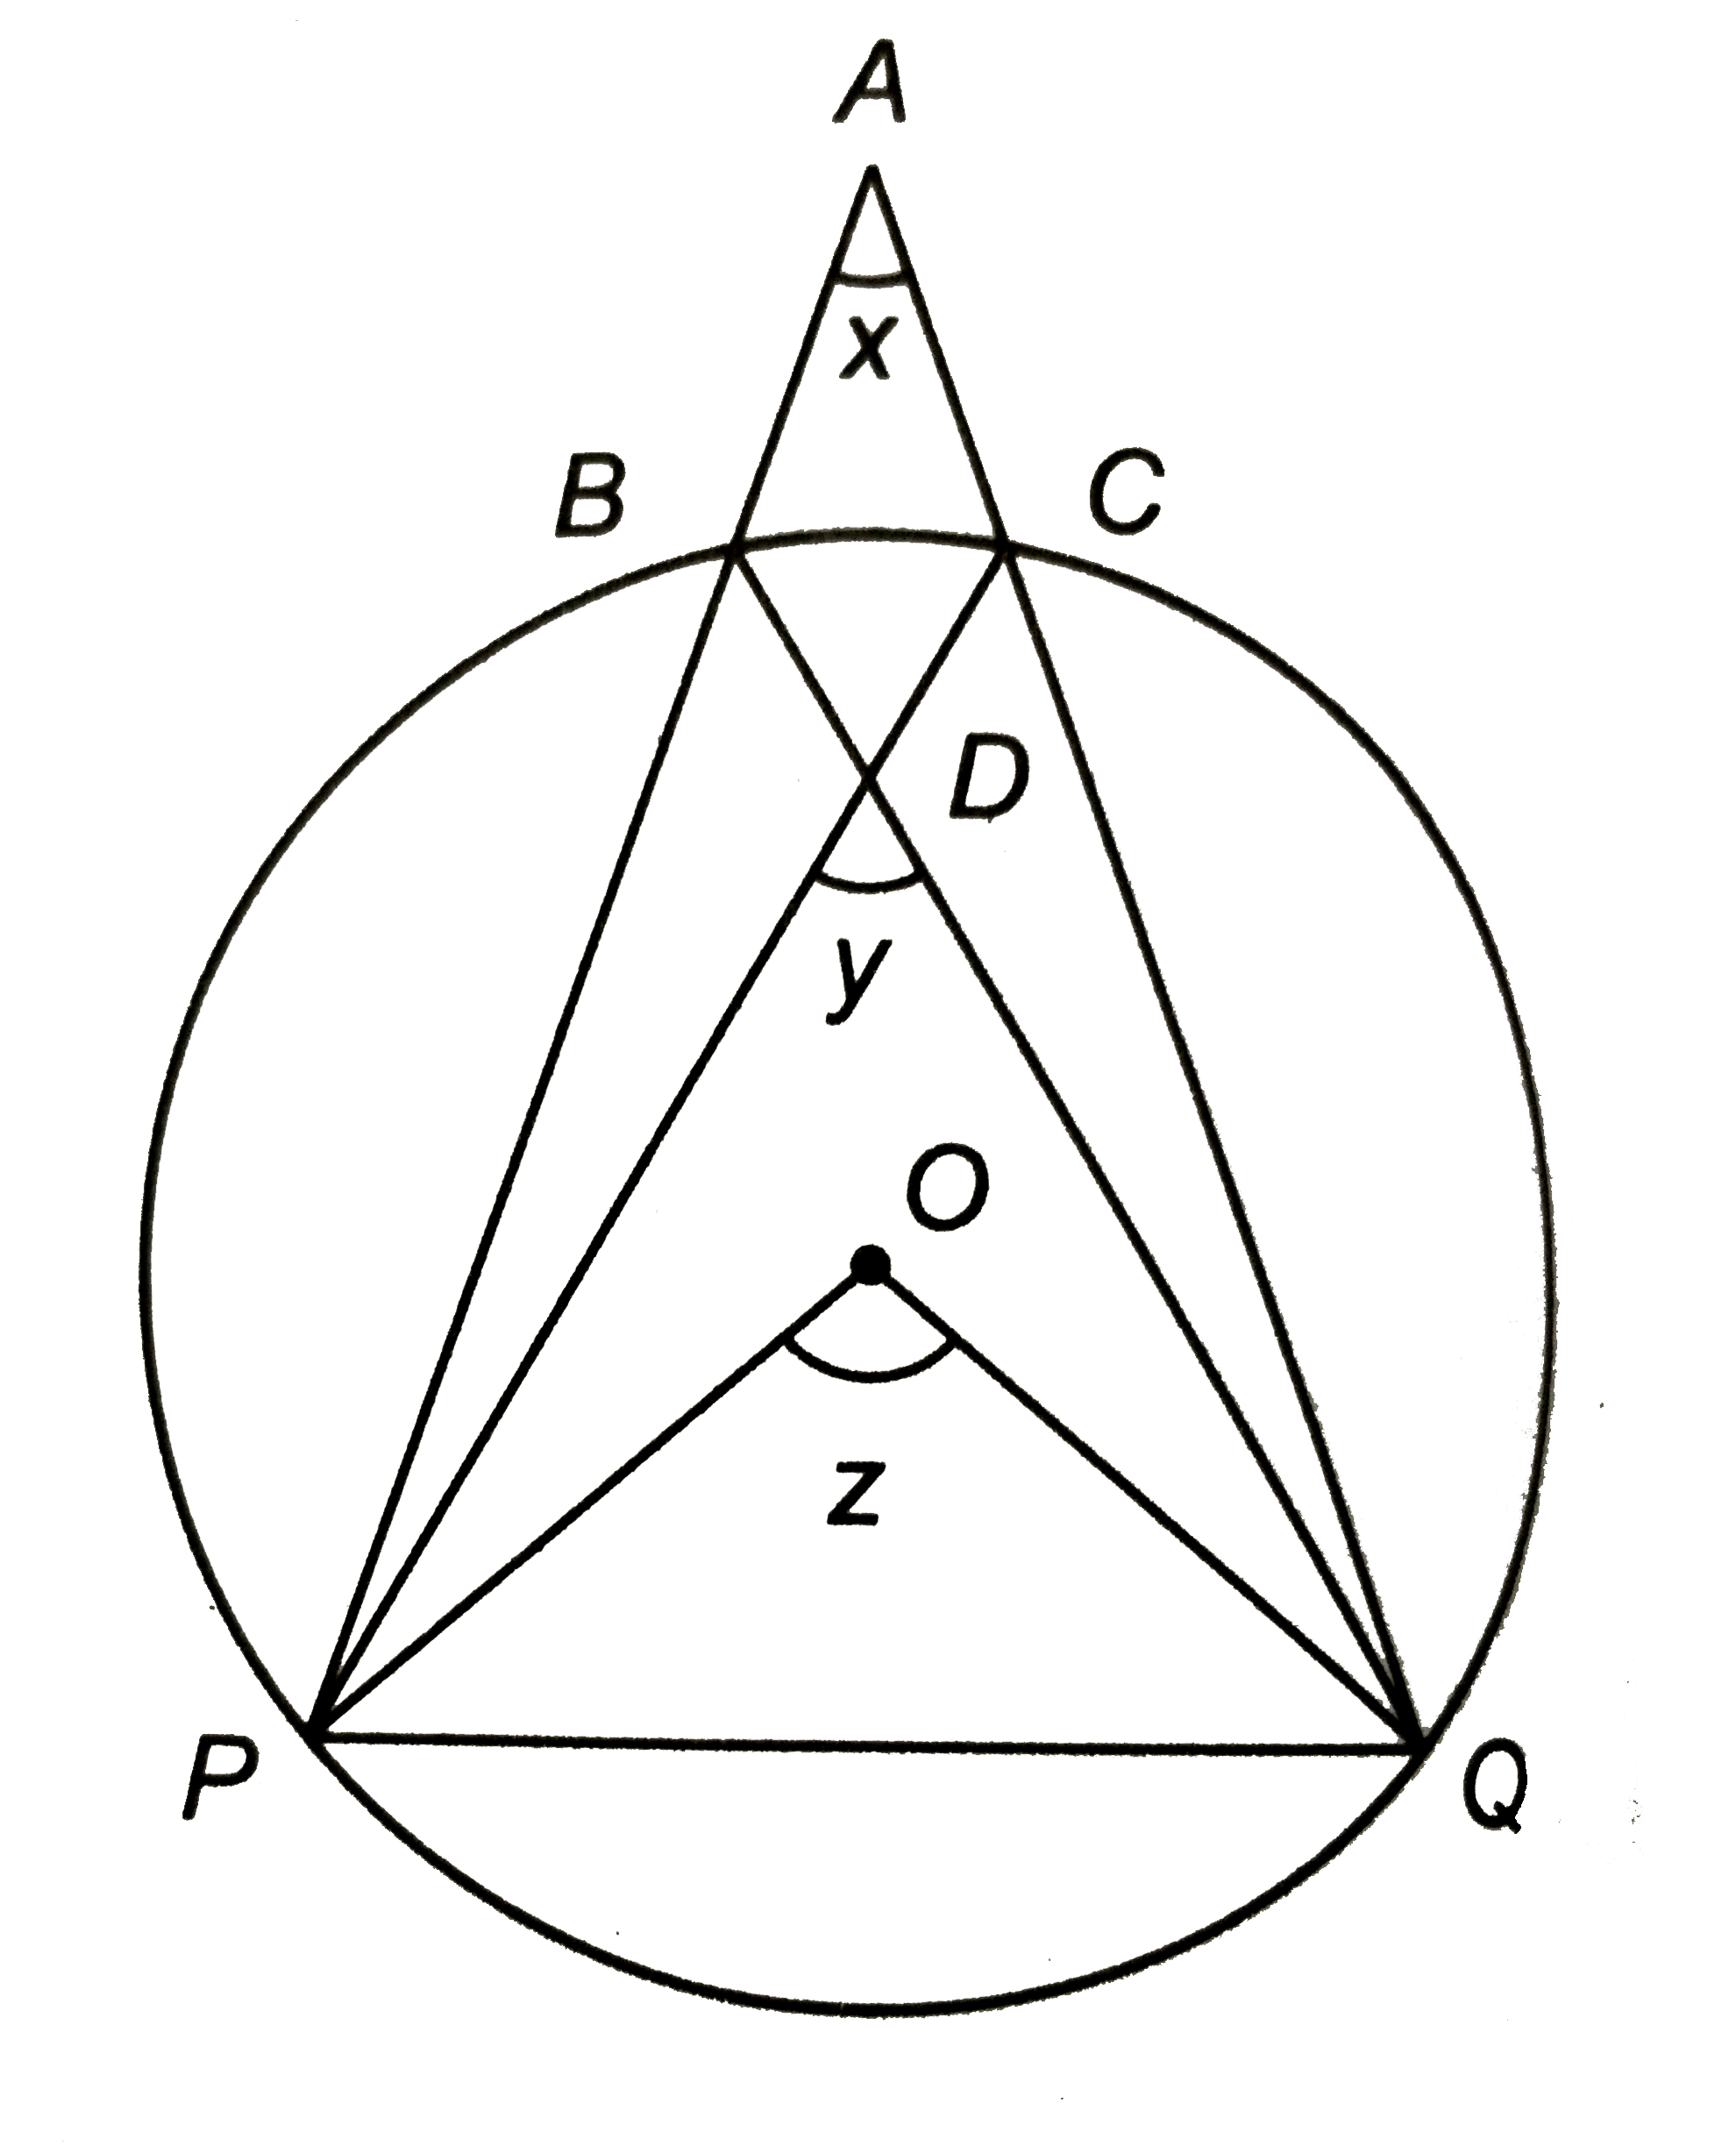 संलग्न चित्र में 'O' वृत्त का केन्द्र है | A वृत्त के बाहर एक बिन्दु है | चित्र में कोण x, y ओर z दर्शायें गये हैं | दिखाइए कि :    x+y=z.